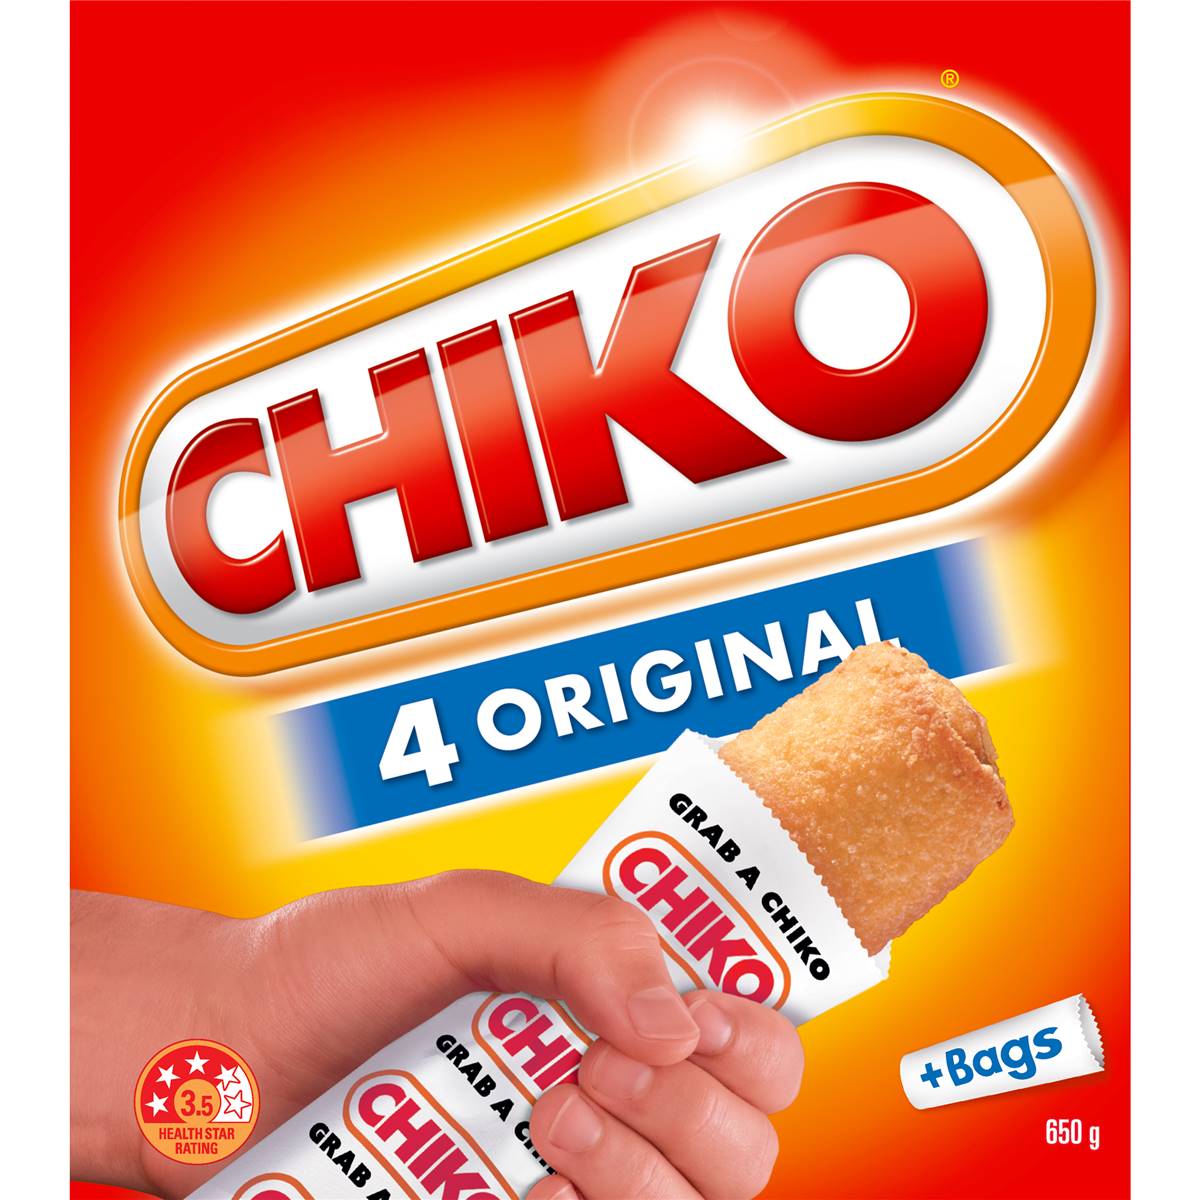 Chiko Frozen Original Rolls 4 pack